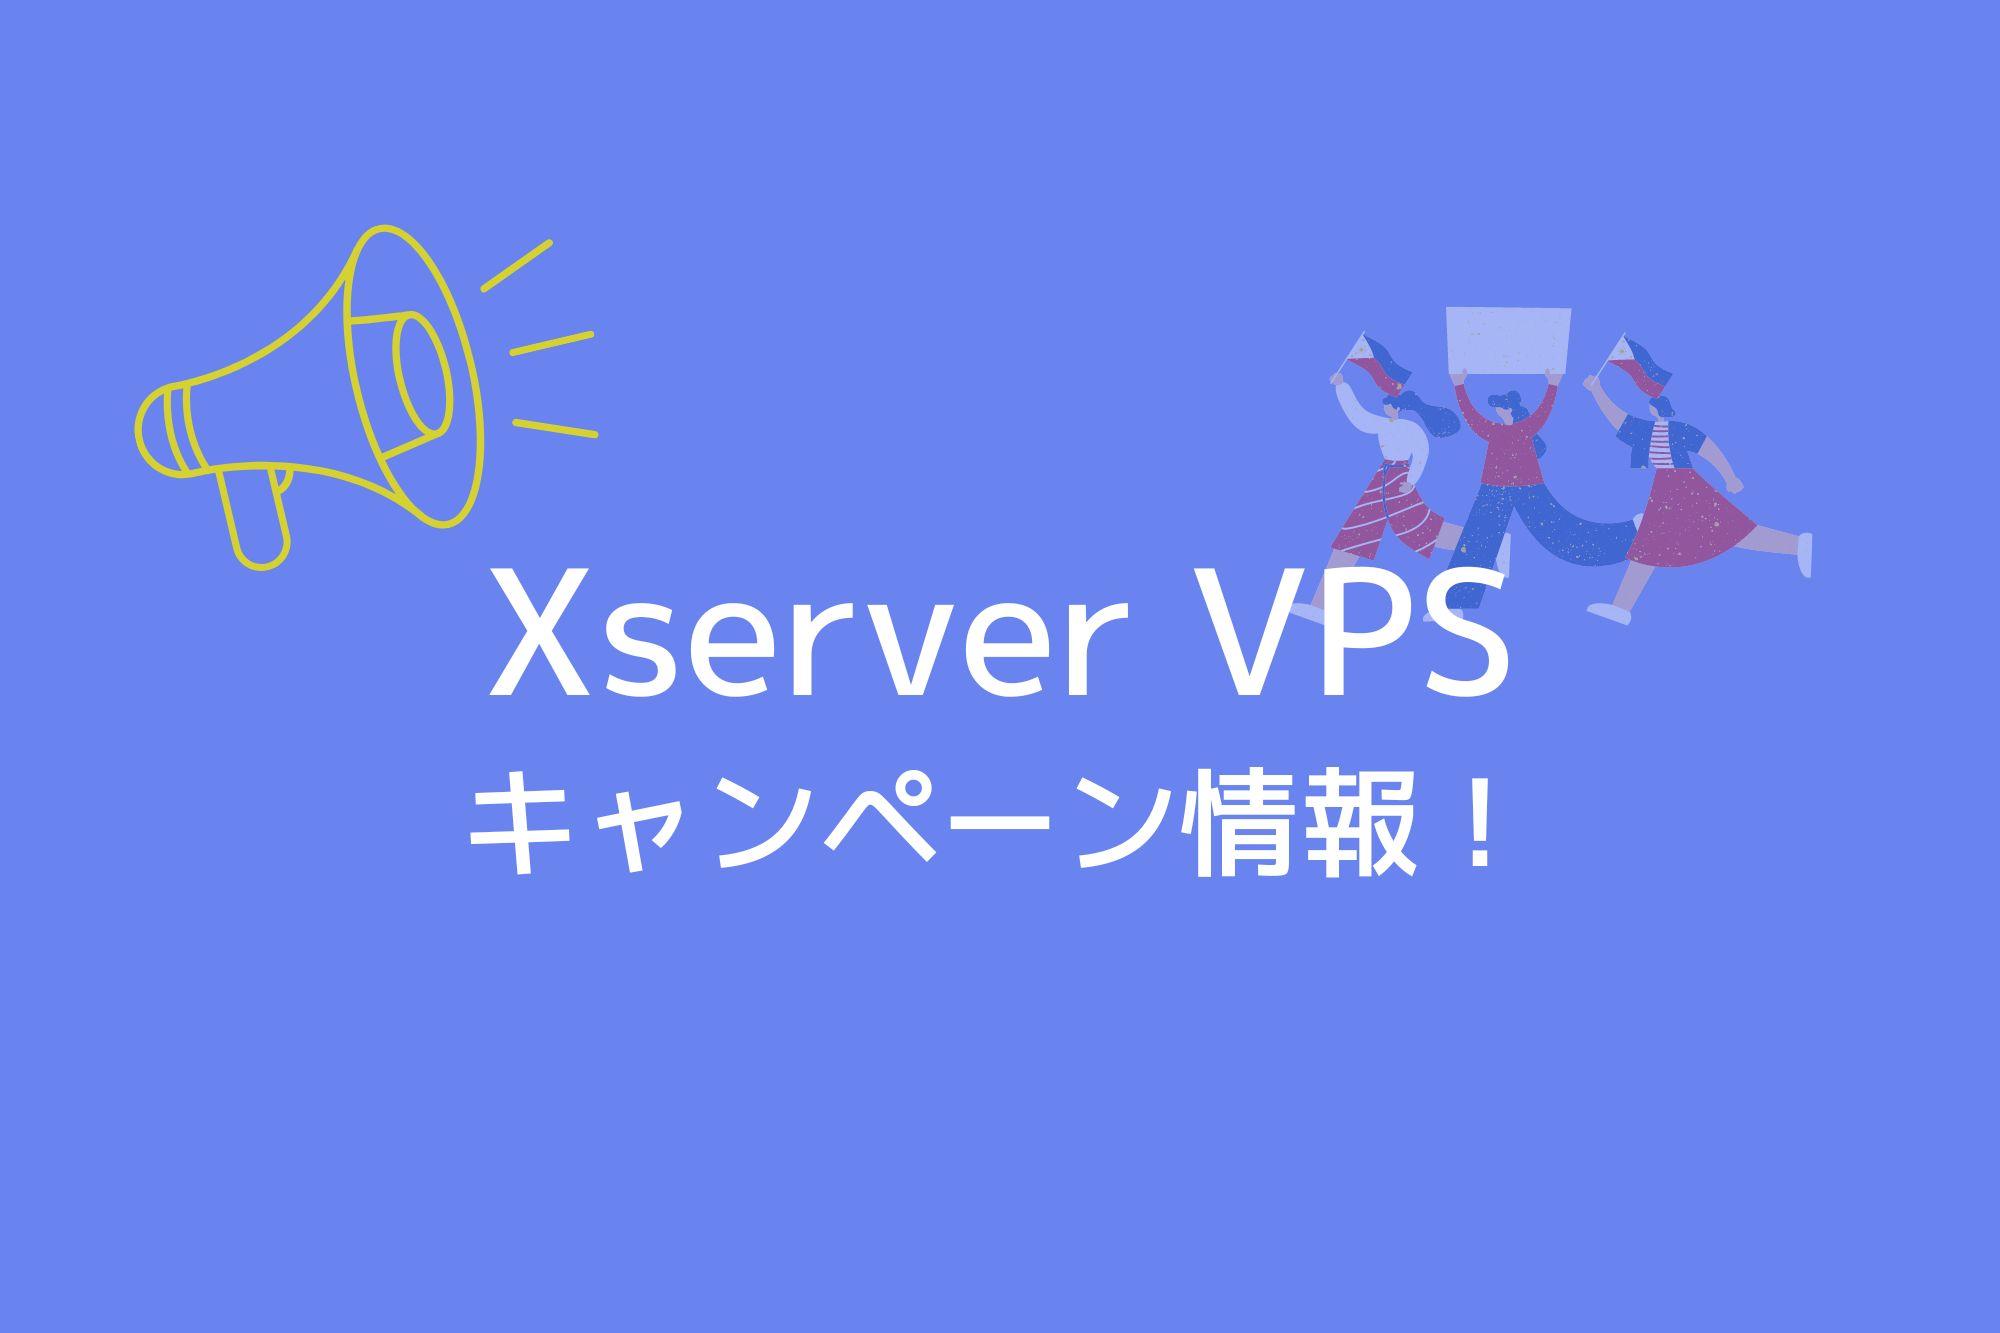 エックスサーバーVPS(Xserver VPS)のキャンペーン情報